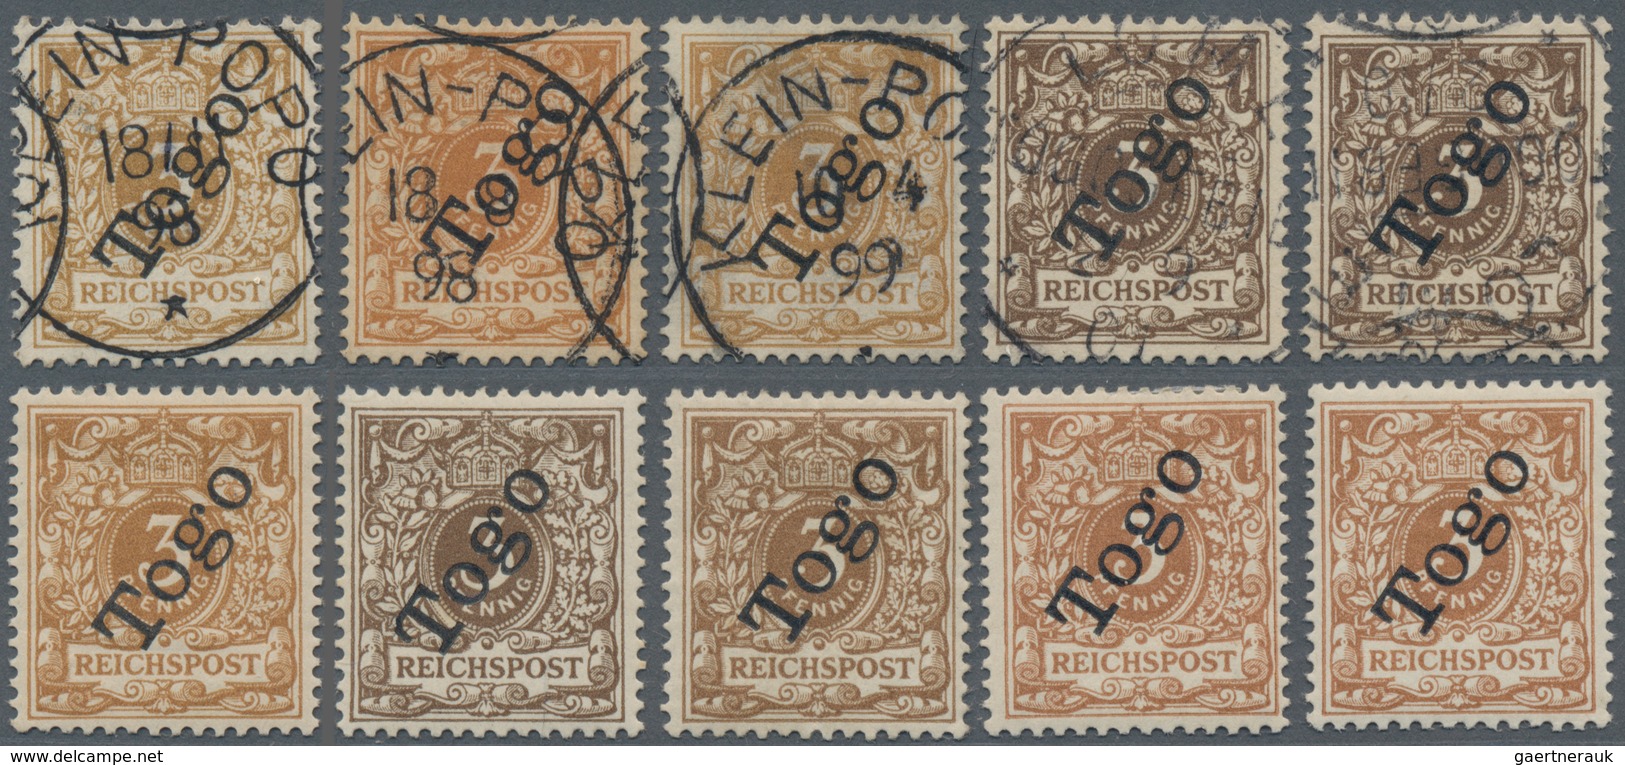 Deutsche Kolonien - Togo: 1897/1899, Aufdruckausgabe 3 Pfg. Braun, Spezialpartie Von Zehn Werten (hä - Togo